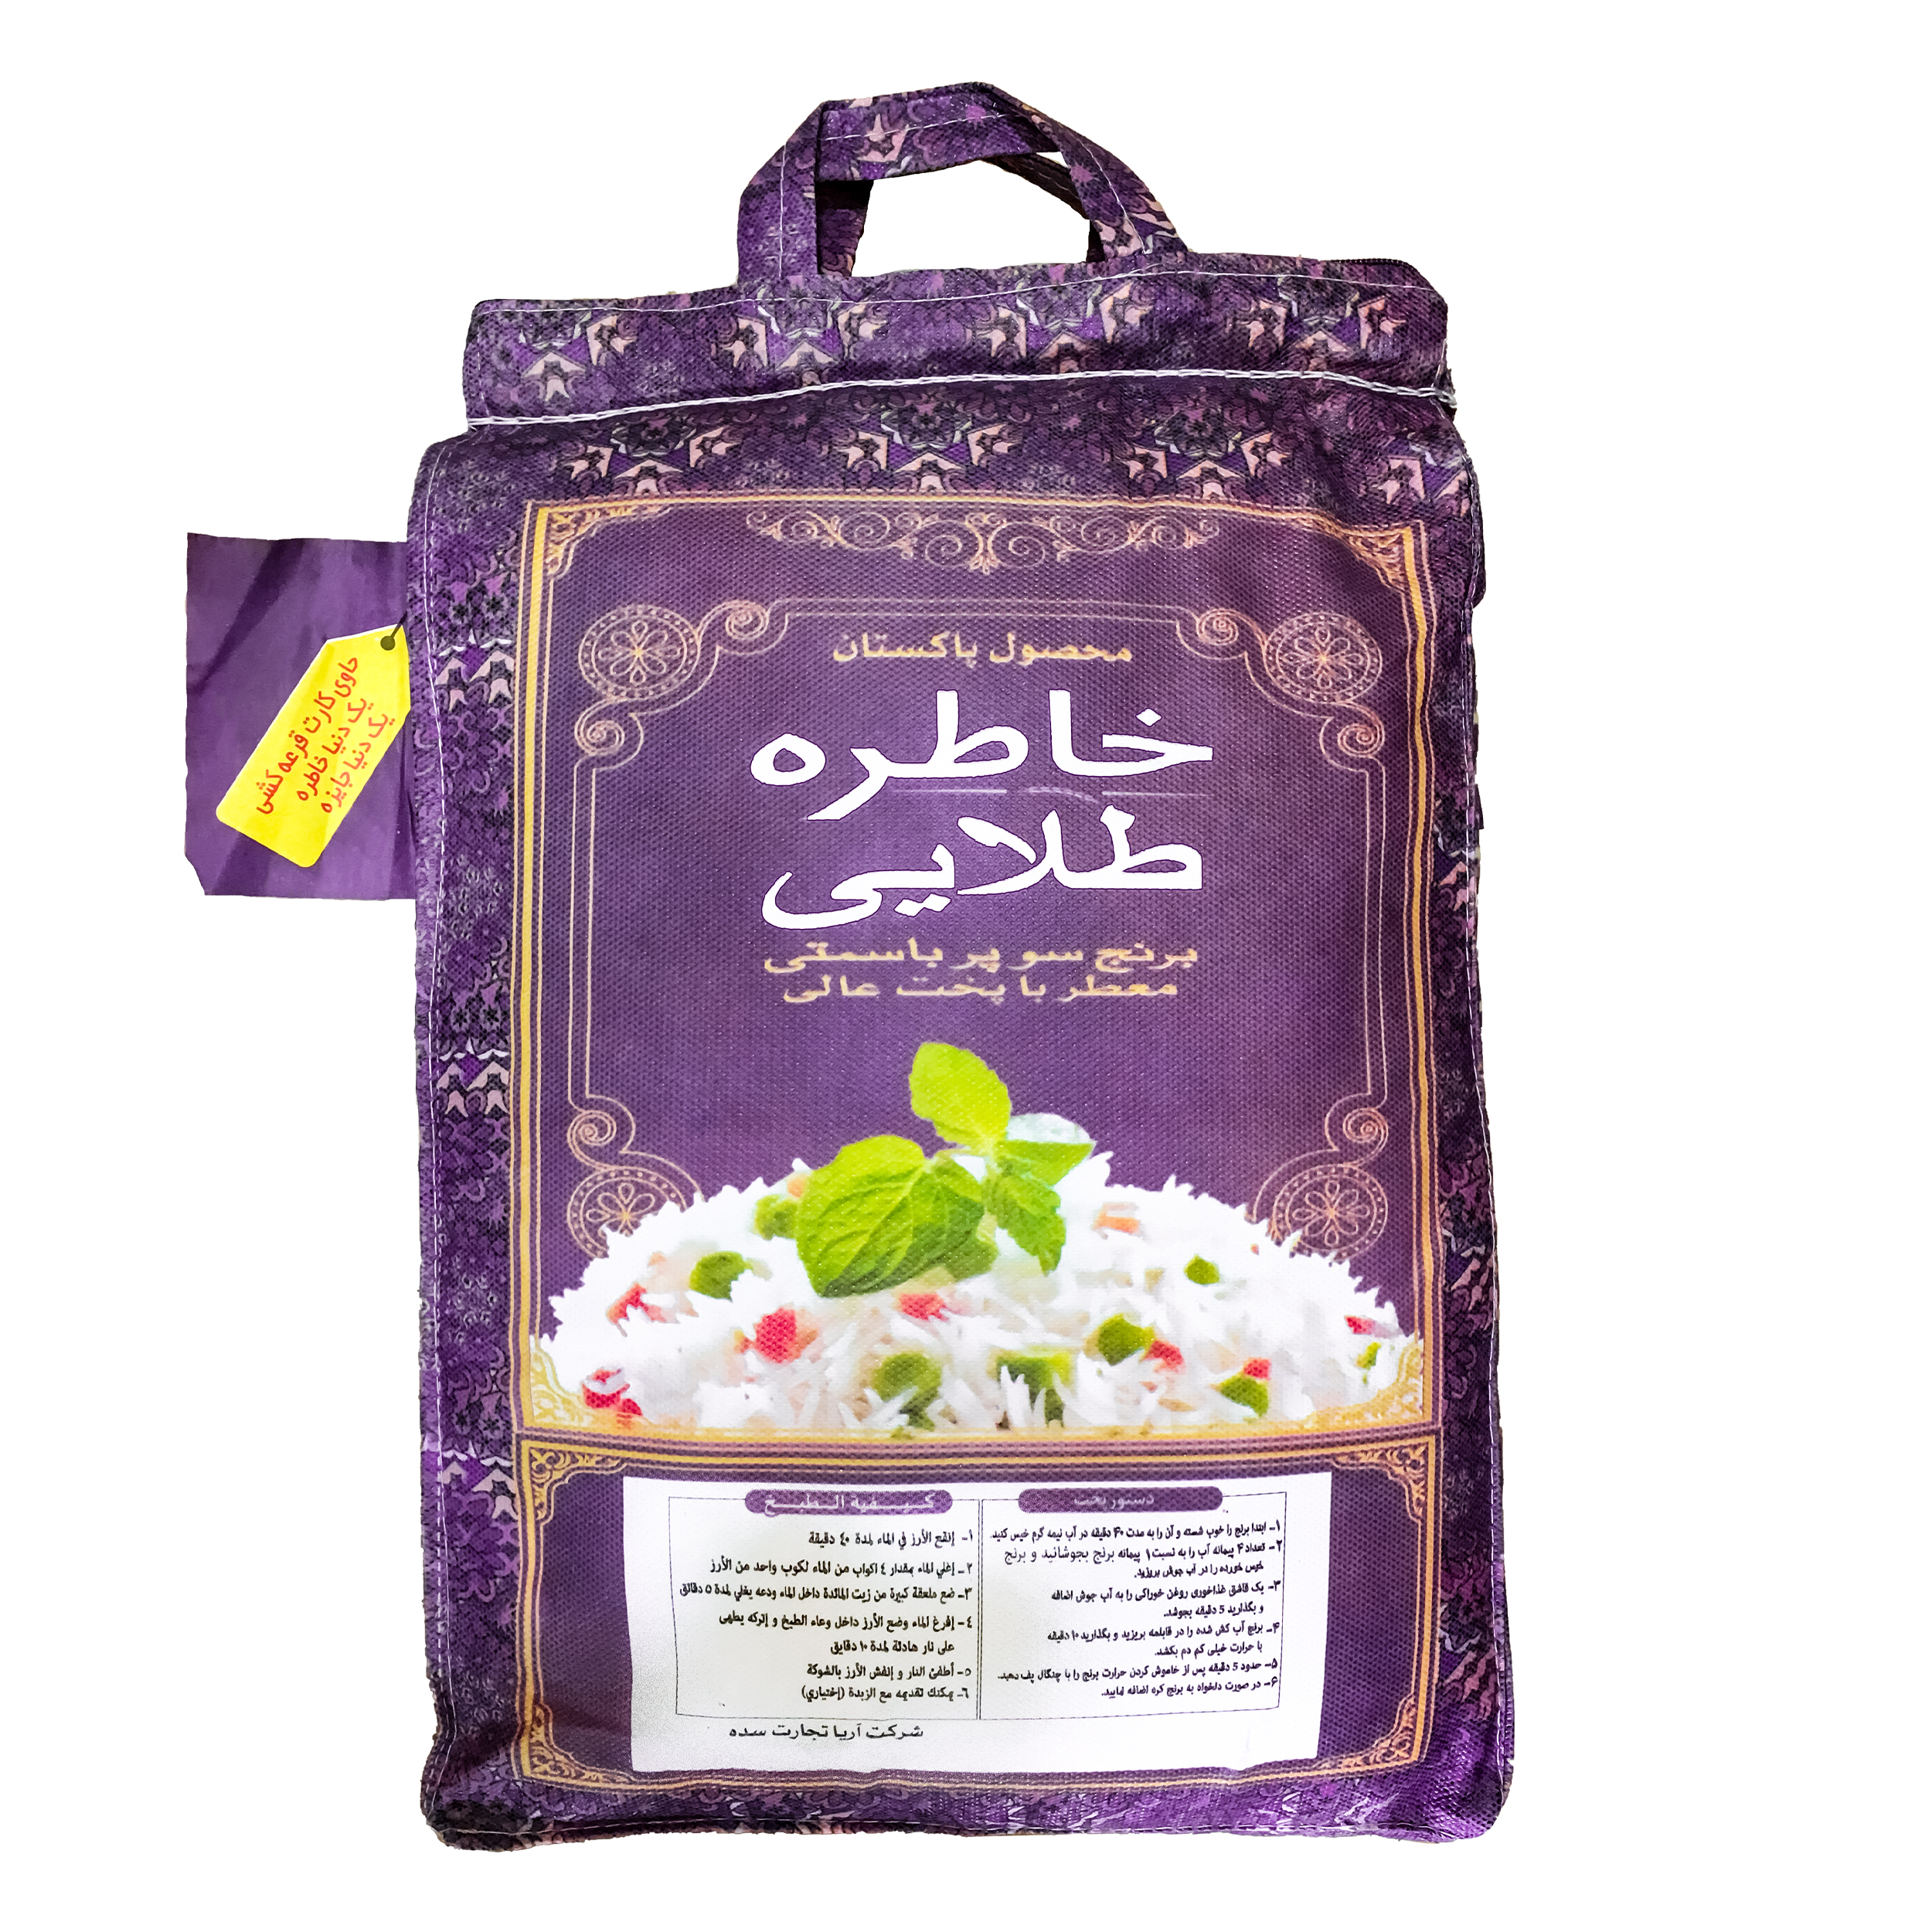 نکته خرید - قیمت روز برنج پاکستانی سوپر باسماتی خاطره طلایی - 10 کیلوگرم خرید